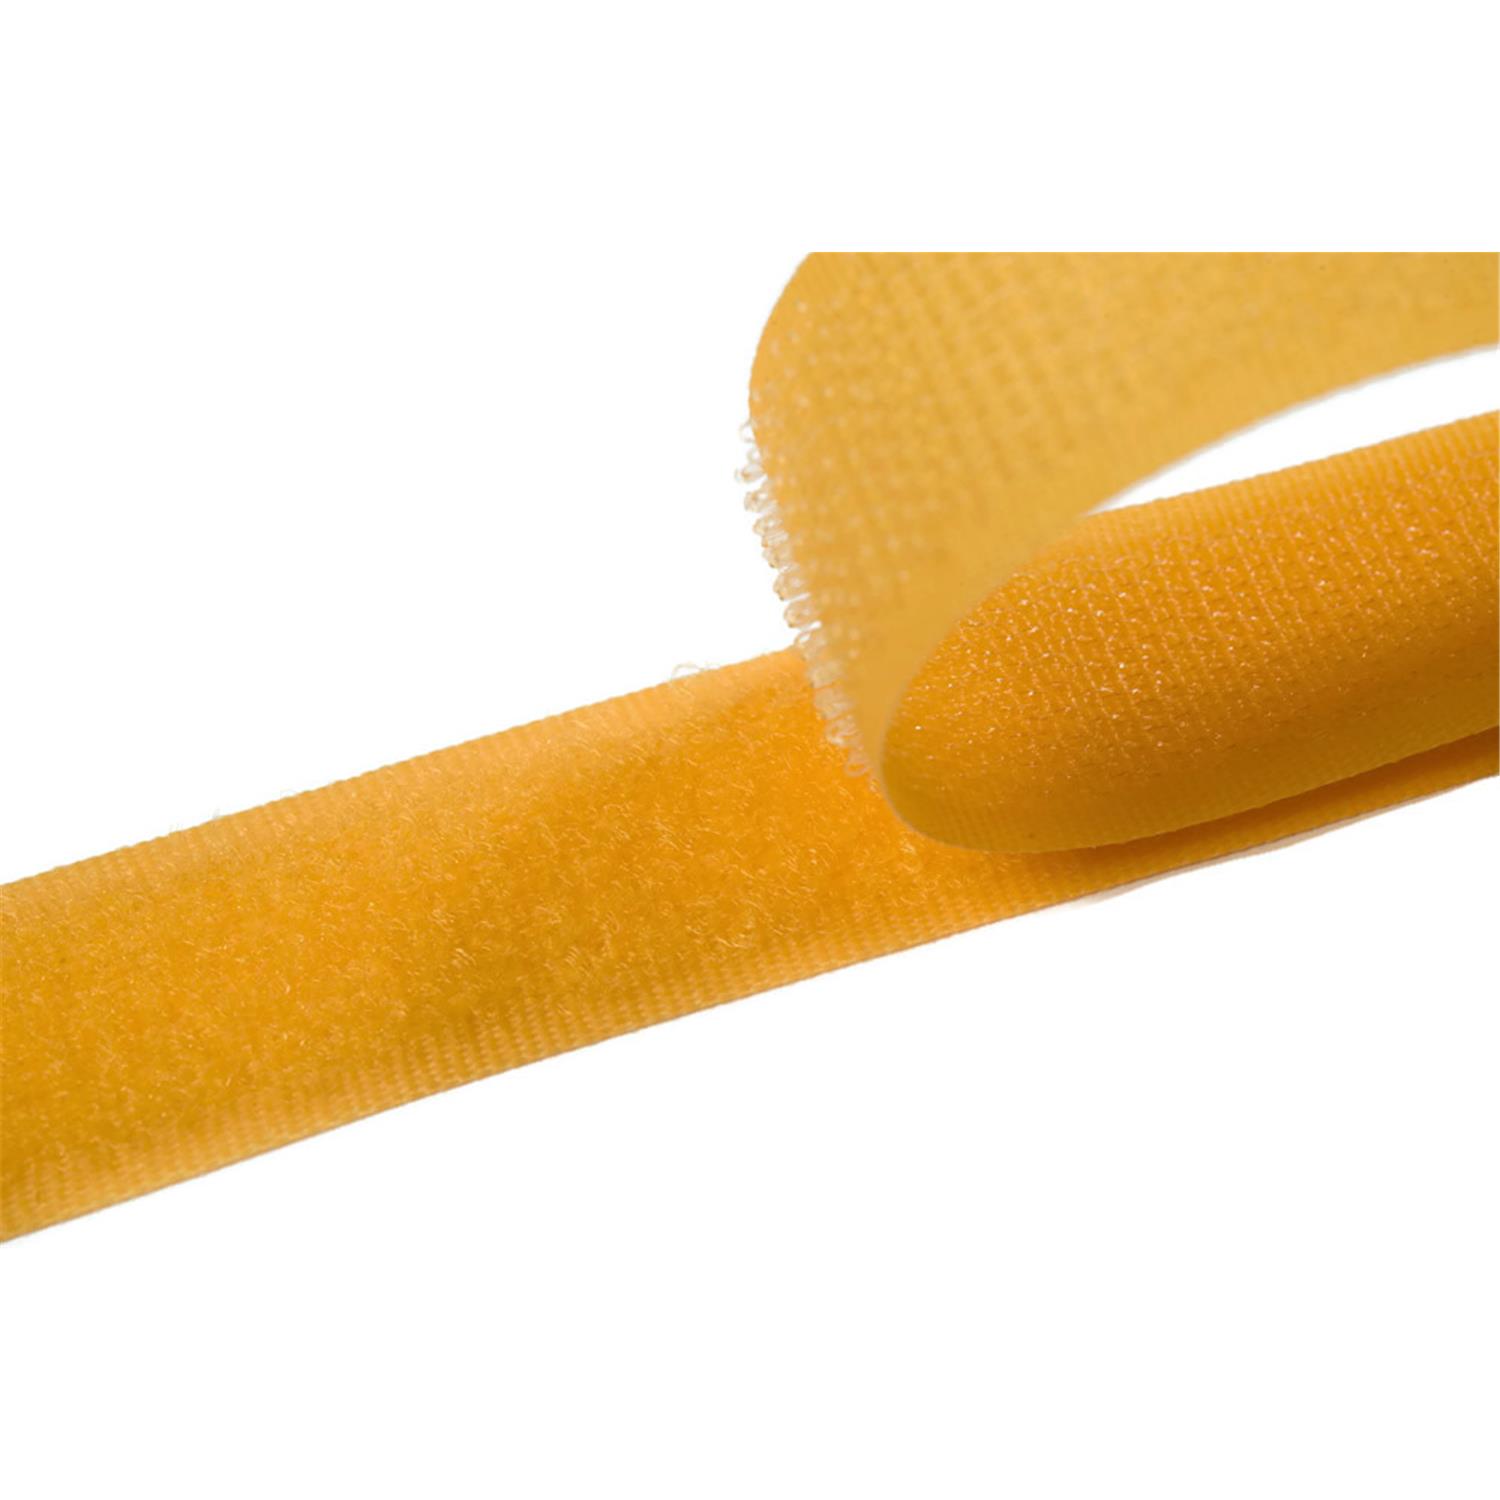 Klettband zum aufnähen, 25 mm, gelb #05 4 Meter